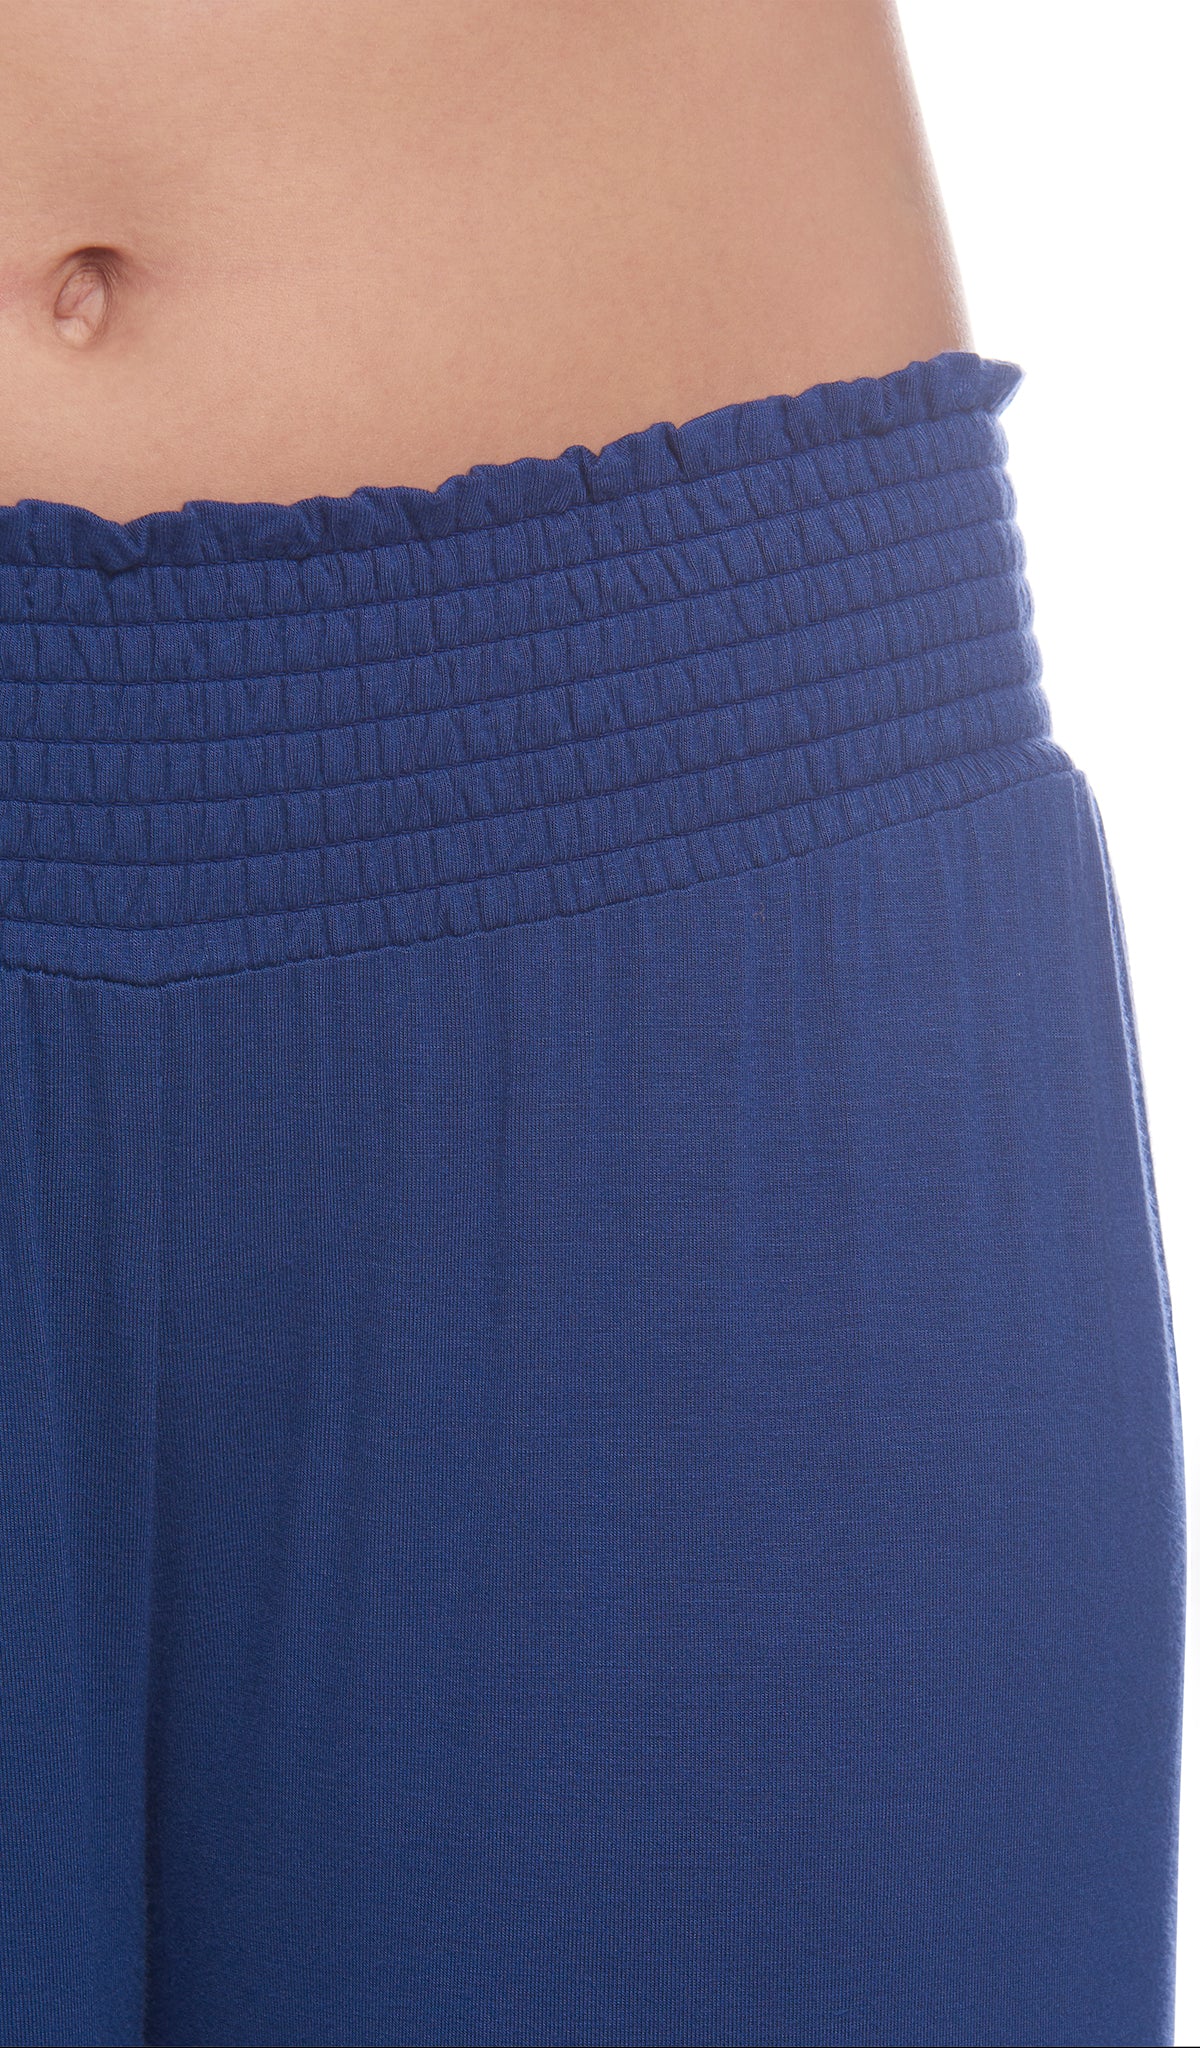 Denim Blue Analise 5-Piece Set, detailed shot of smocked elastic waistband.